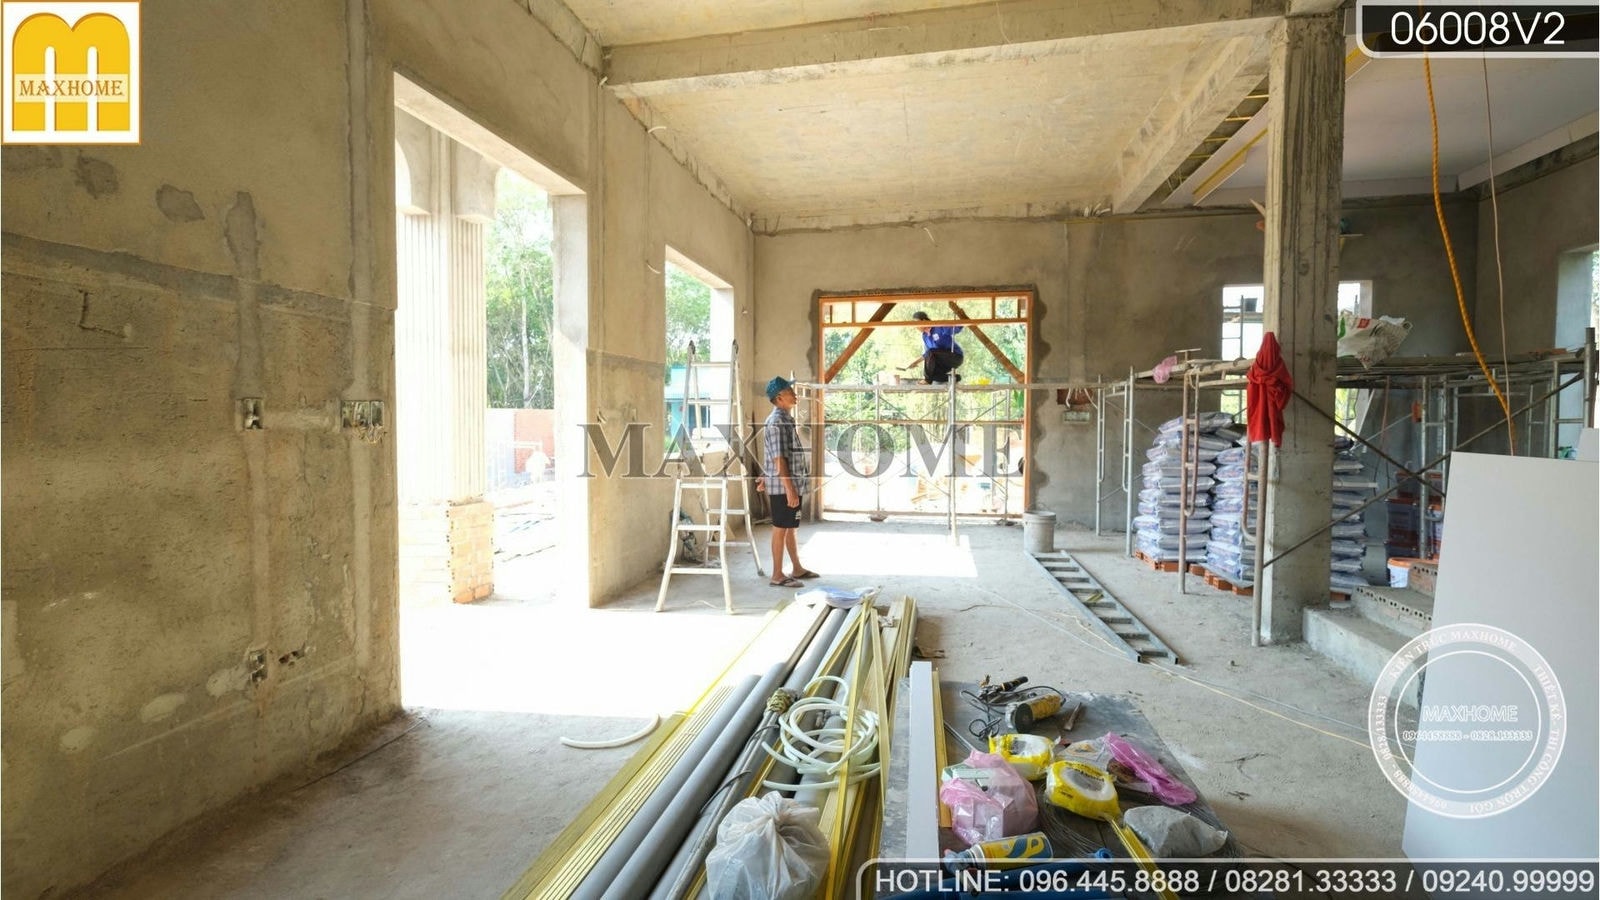 Tiến độ thi công nhà mái Thái 2 tầng tân cổ điển tại Bình Dương